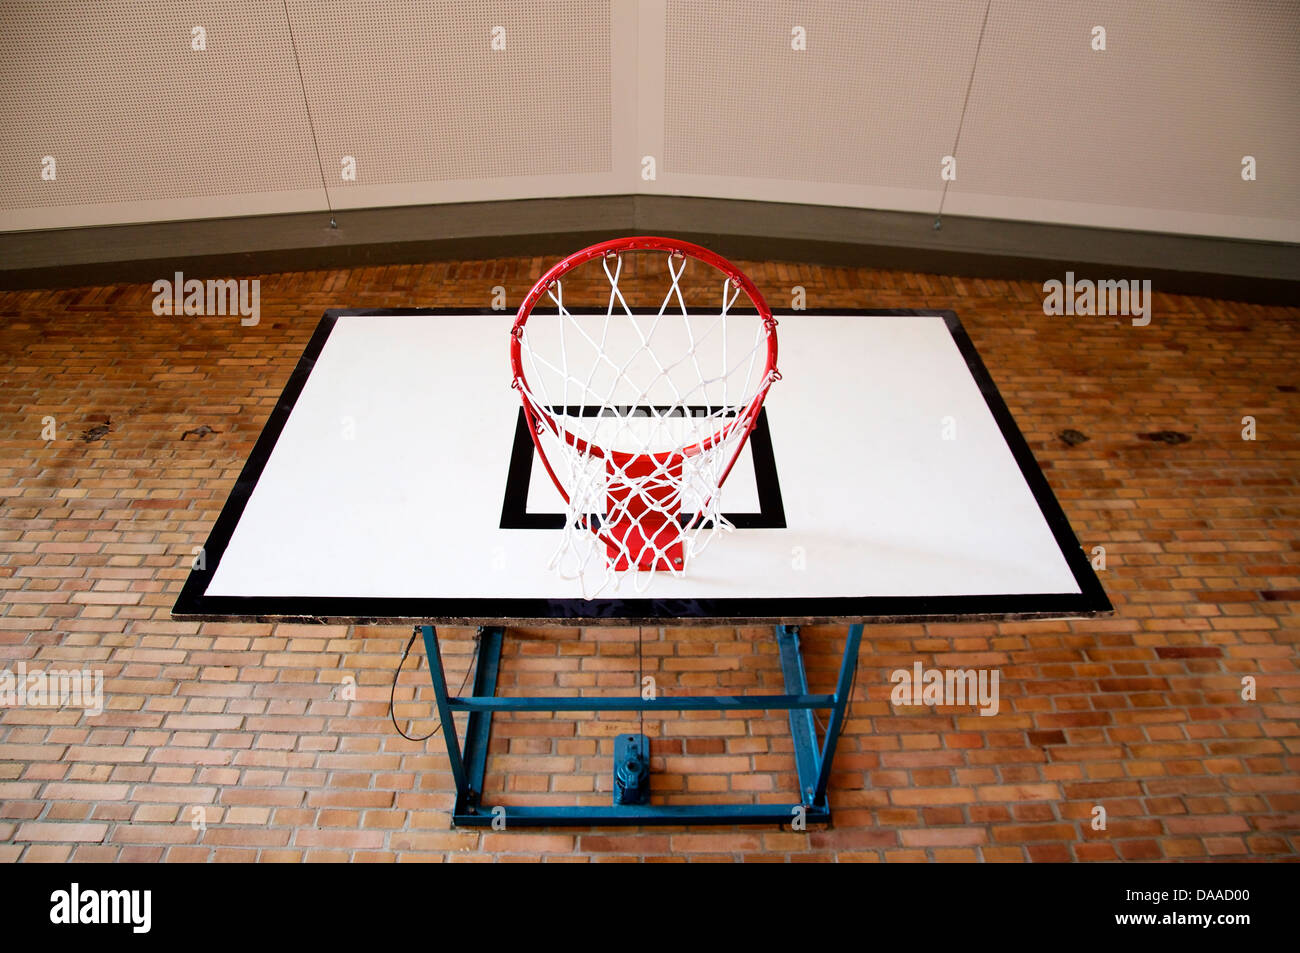 Panier de basket-ball à l'intérieur d'une salle de sport Vue de dessous Banque D'Images